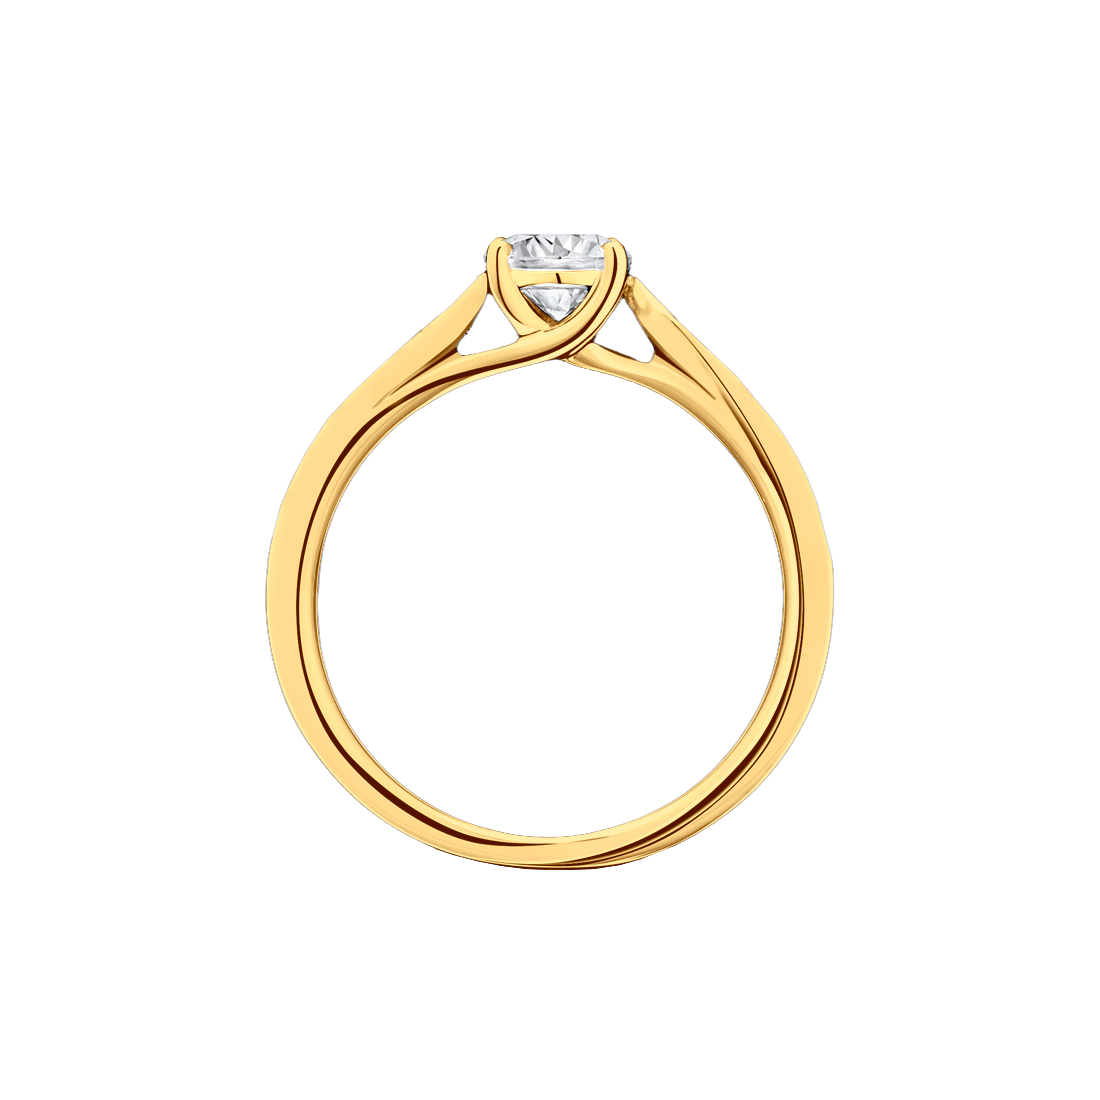 Anel Solitário Ouro Amarelo, Diamante 40 pontos e Diamantes Laterais - ESPECIAL SOLITARIOS